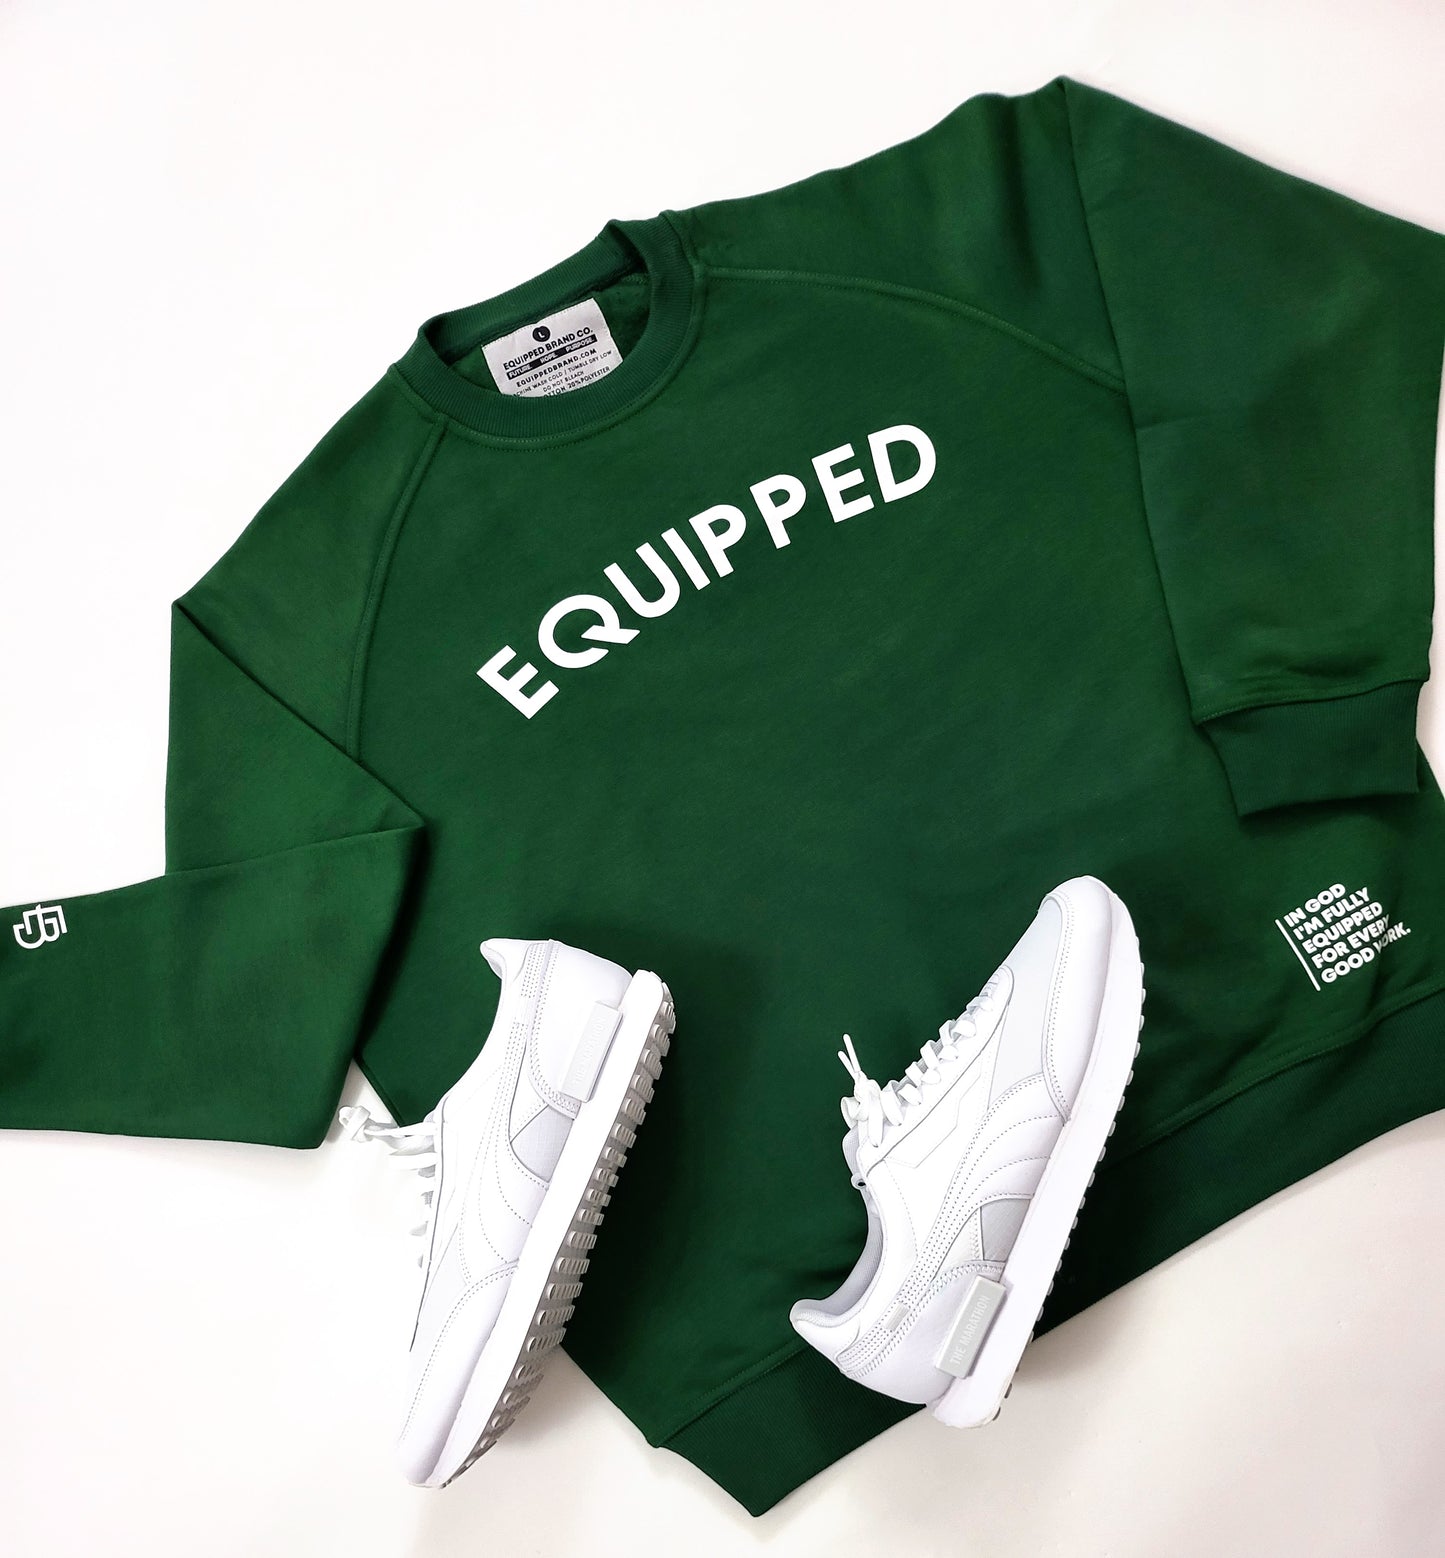 Equipped Sweatshirt | Amazon Green